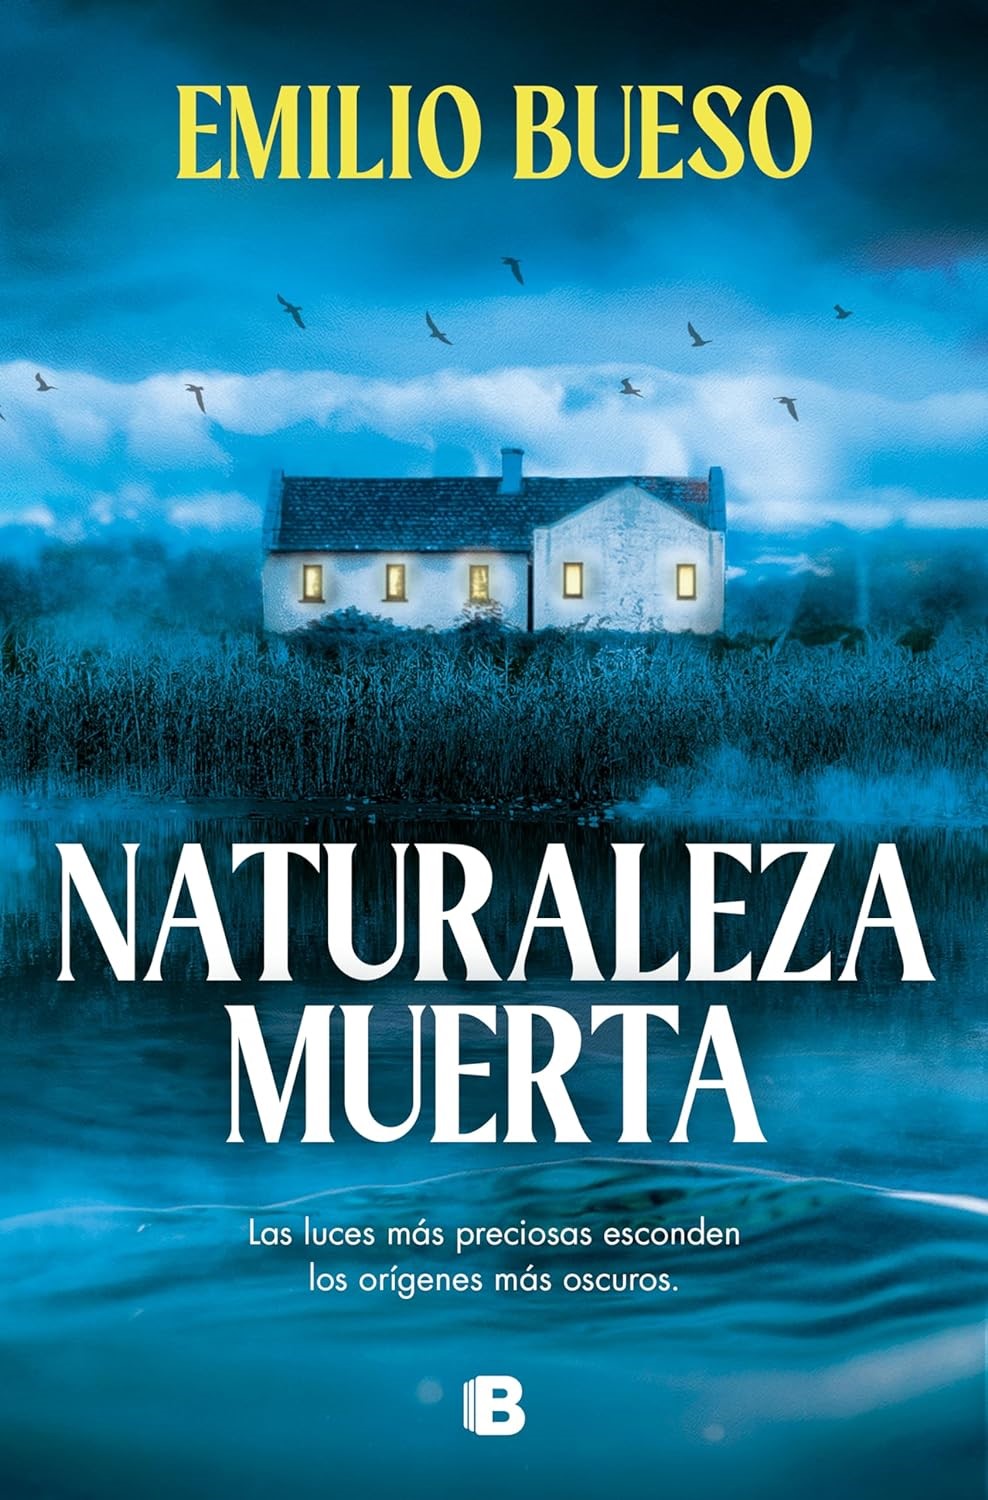 Cover from Naturaleza muerta